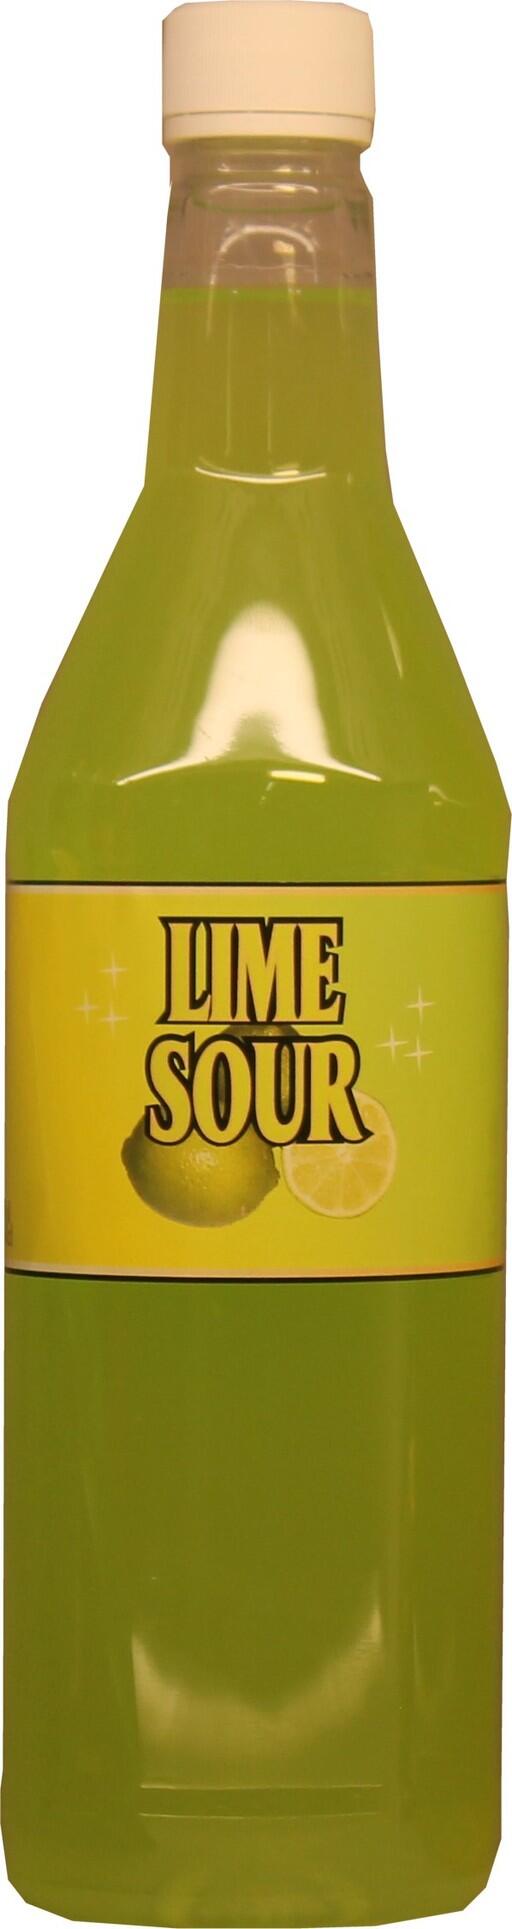 Lime sourmix blandas till god Lime sour.